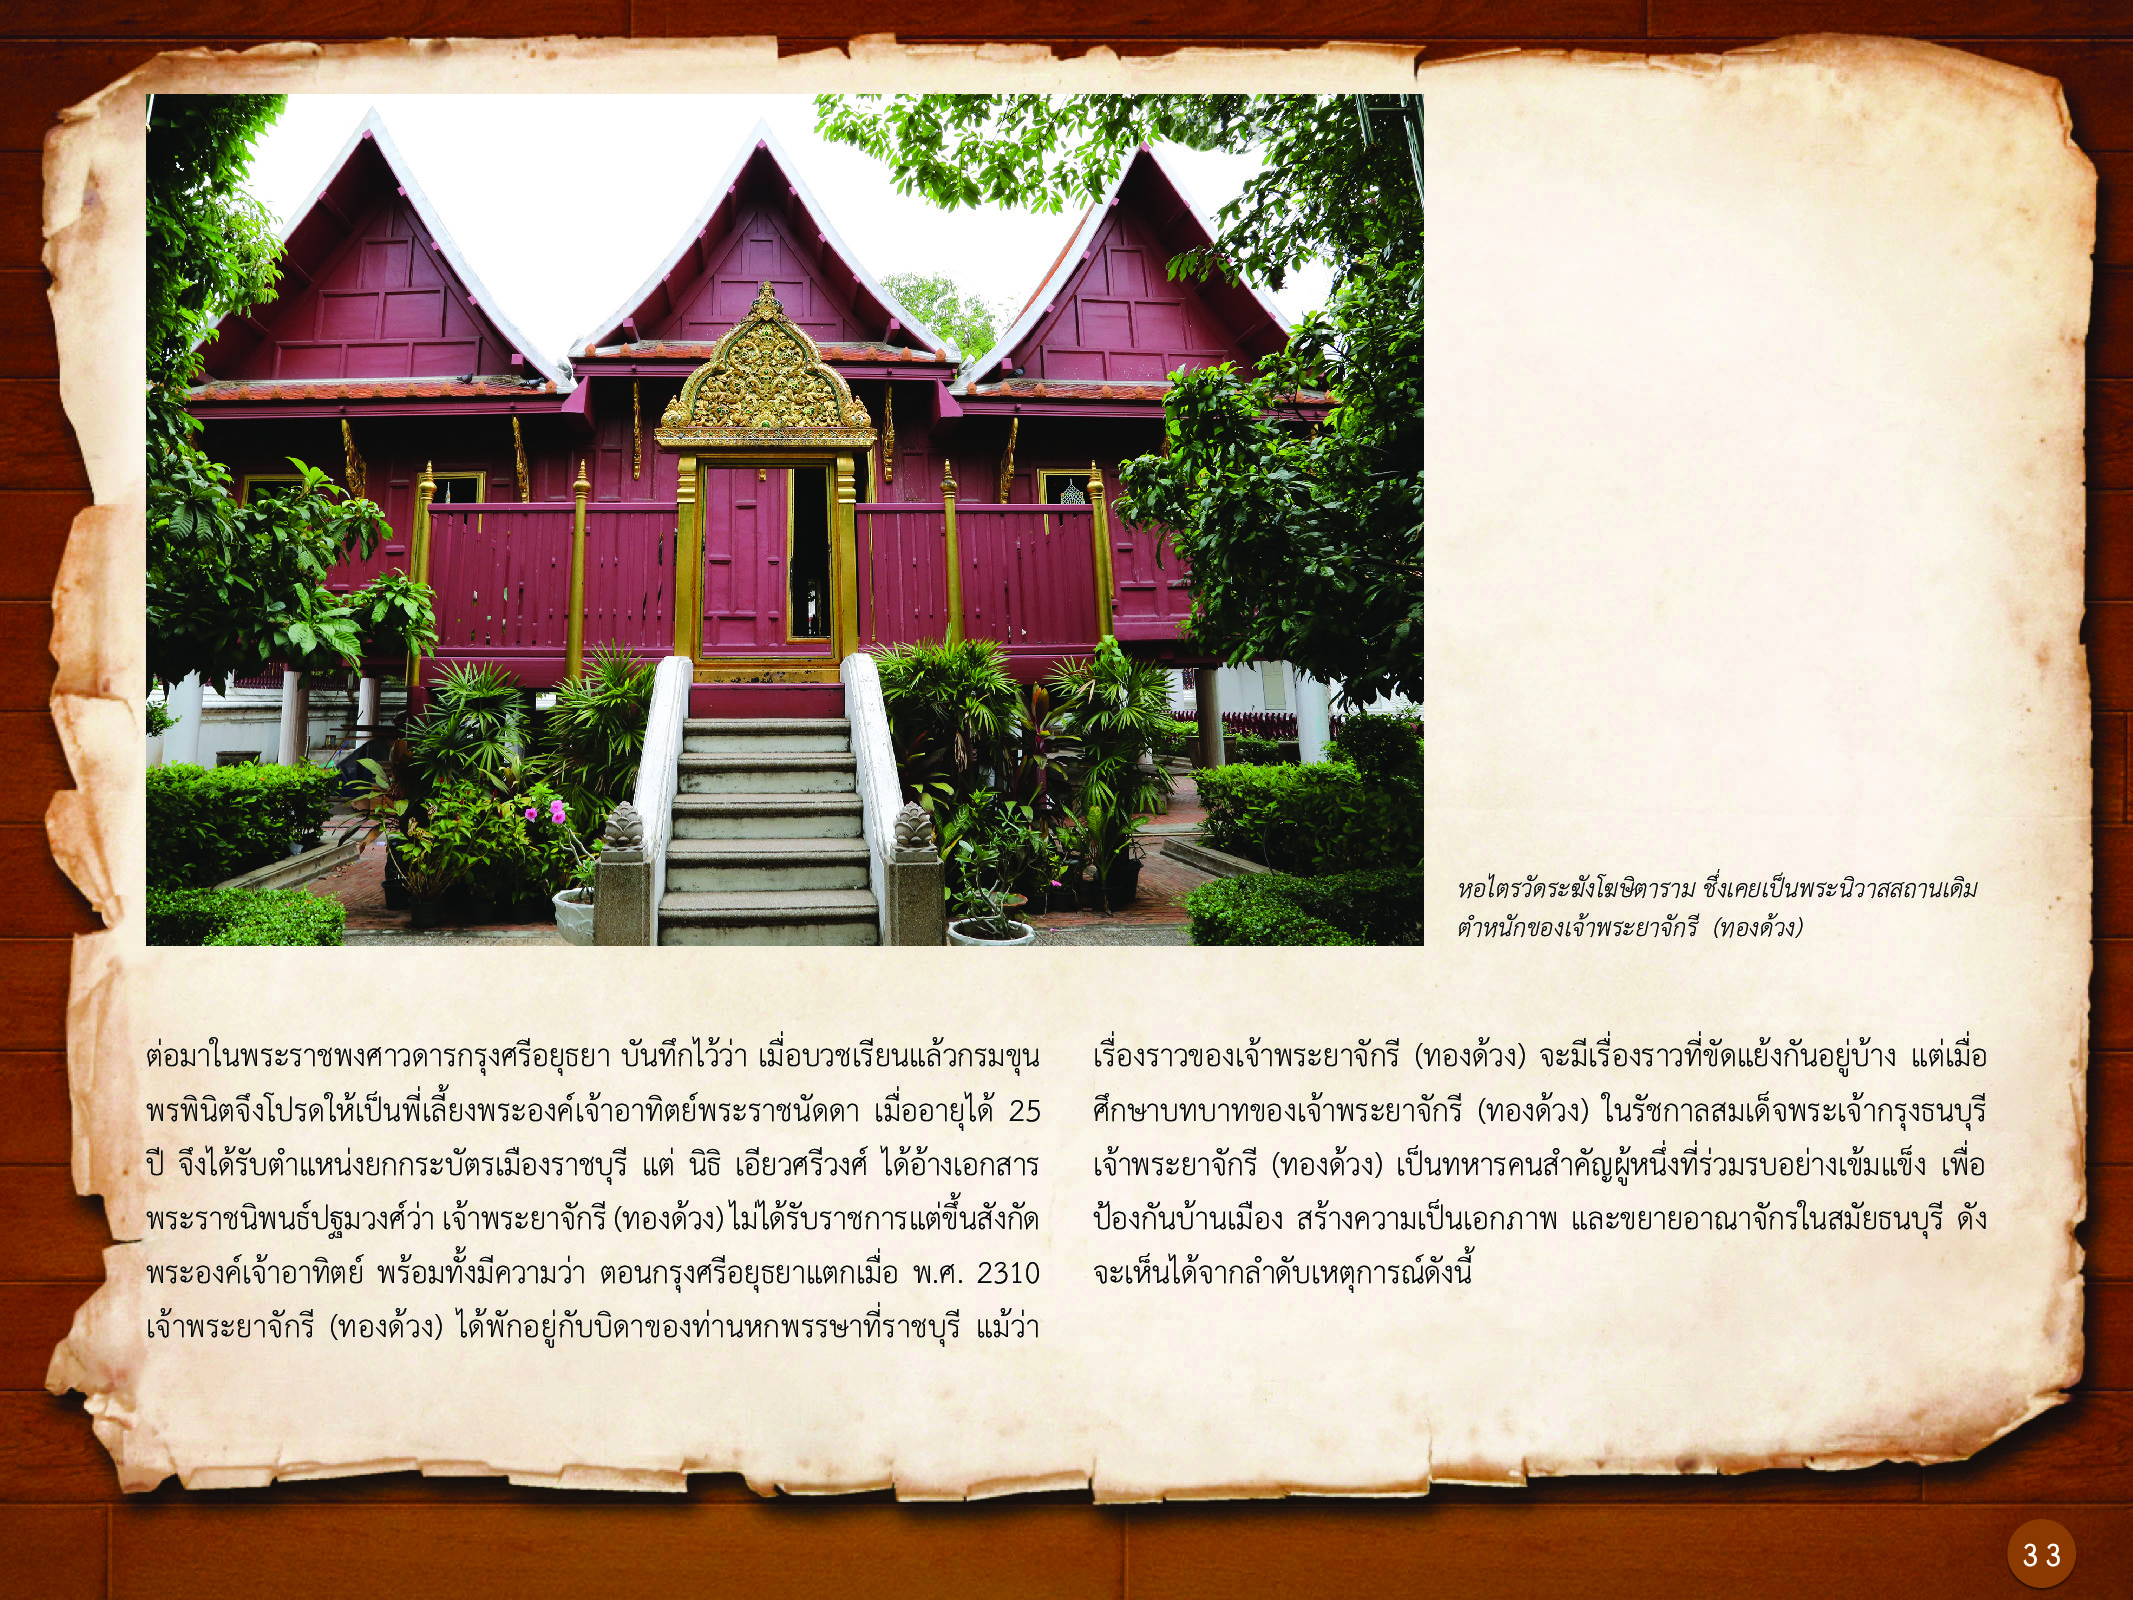 ประวัติศาสตร์กรุงธนบุรี ./images/history_dhonburi/33.jpg